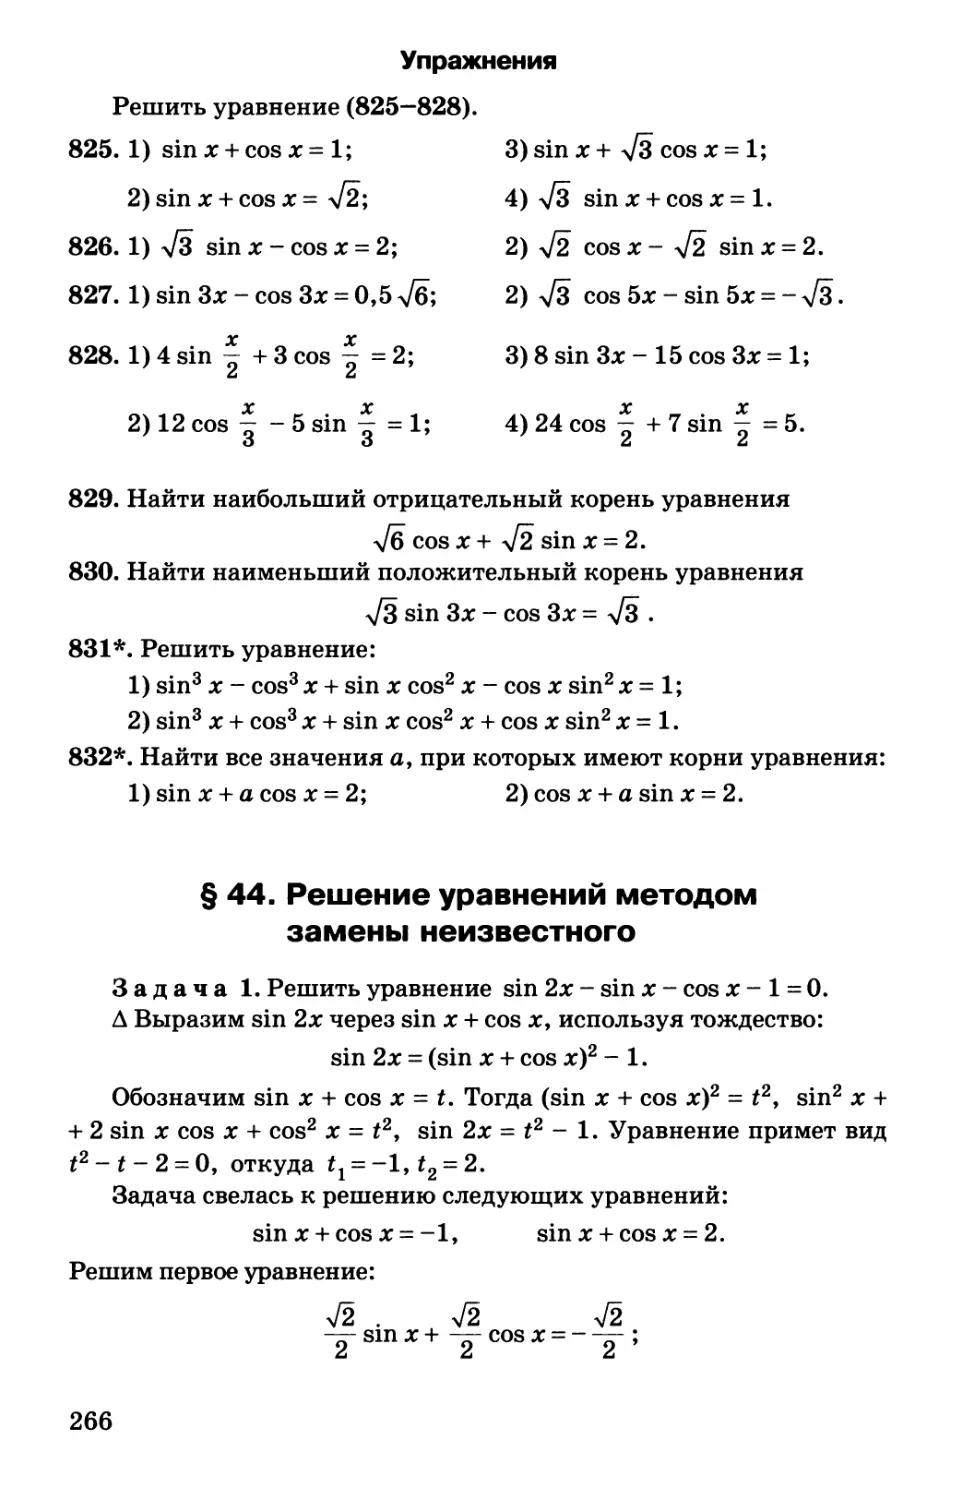 § 44. Решение уравнений методом замены неизвестного